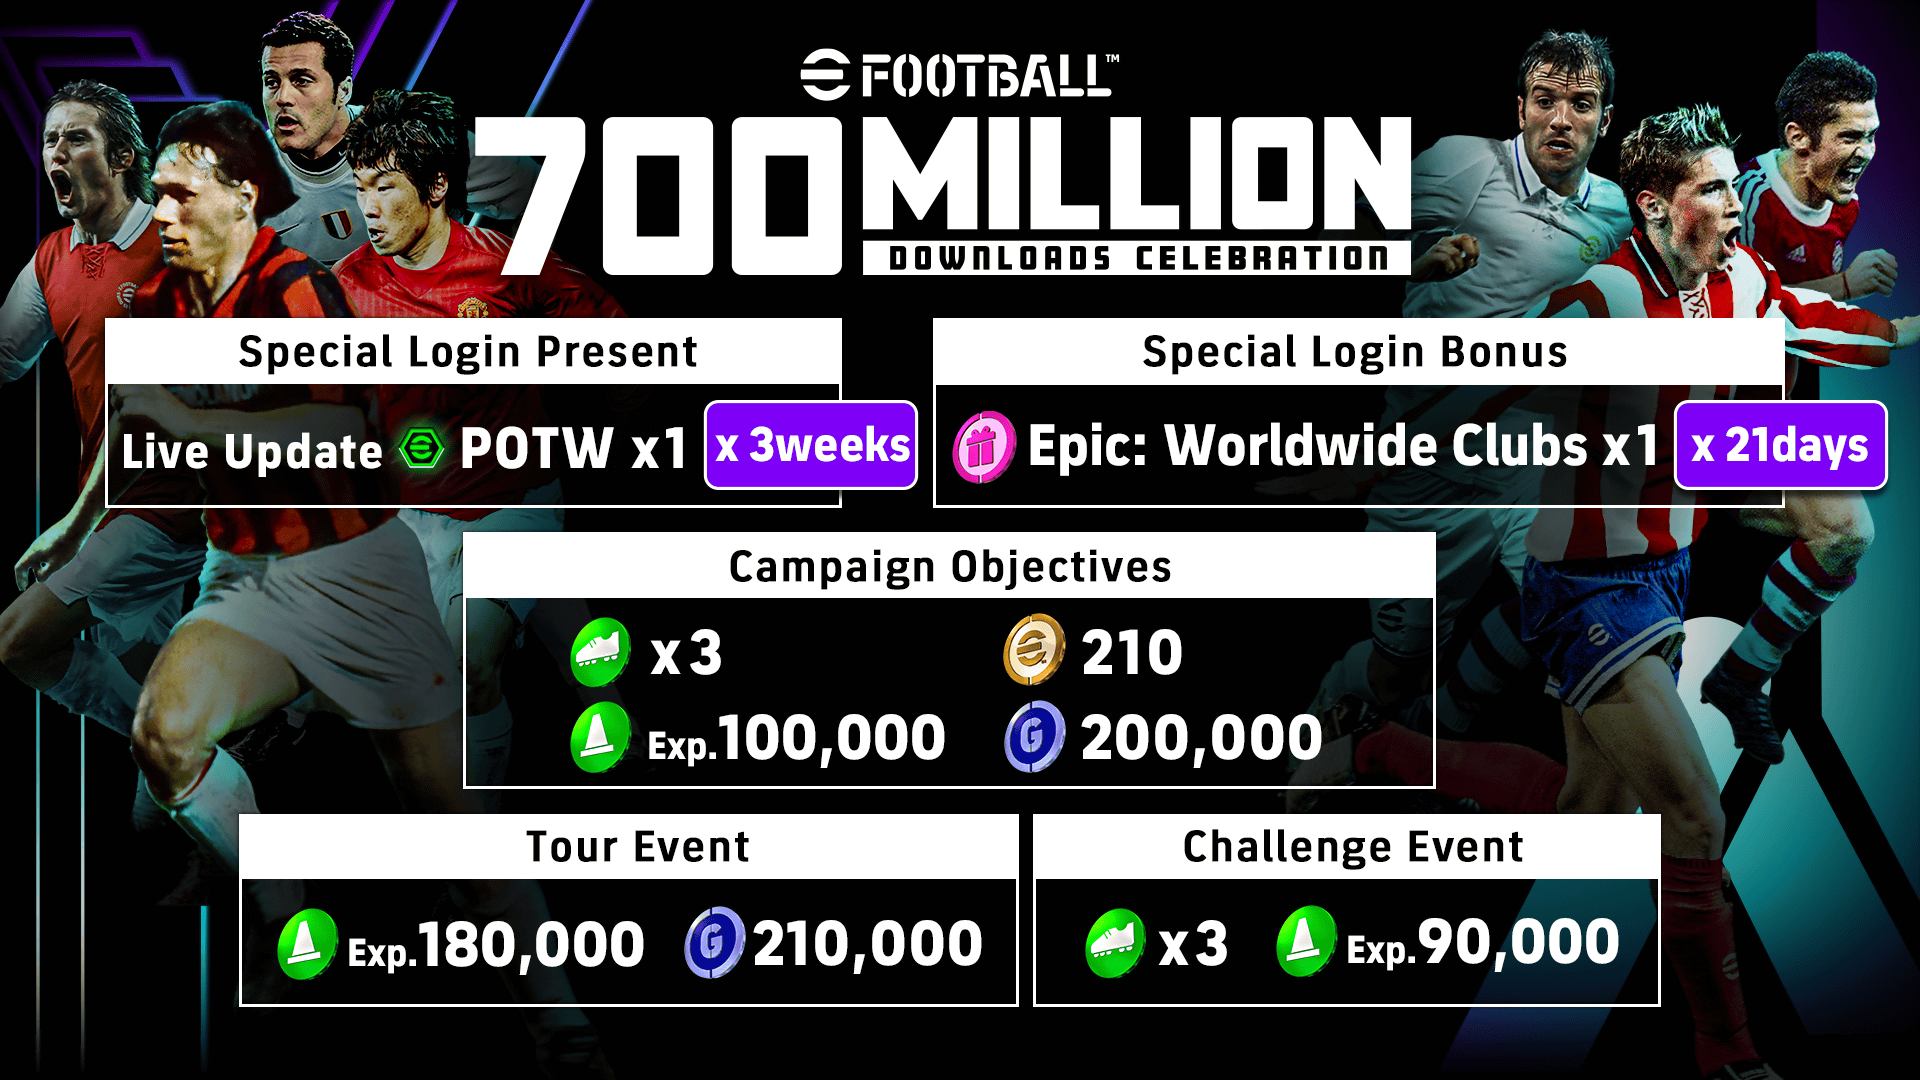 eFootball raggiunge 700 milioni di download